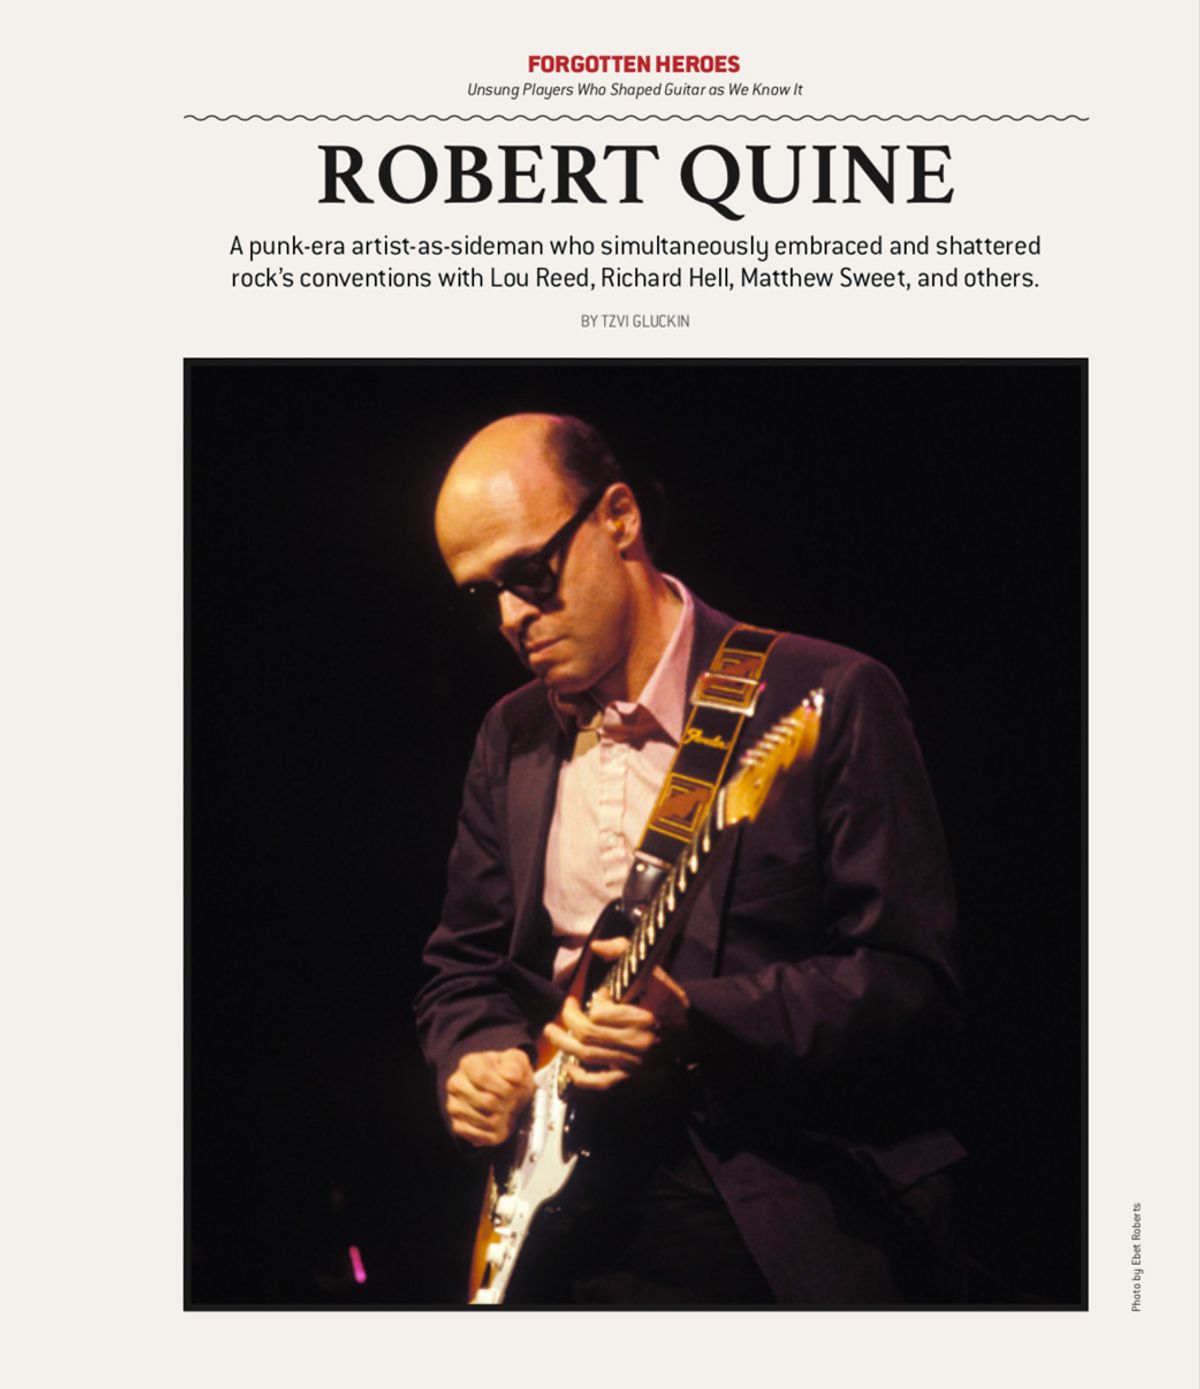 Forgotten Heroes: Robert Quine